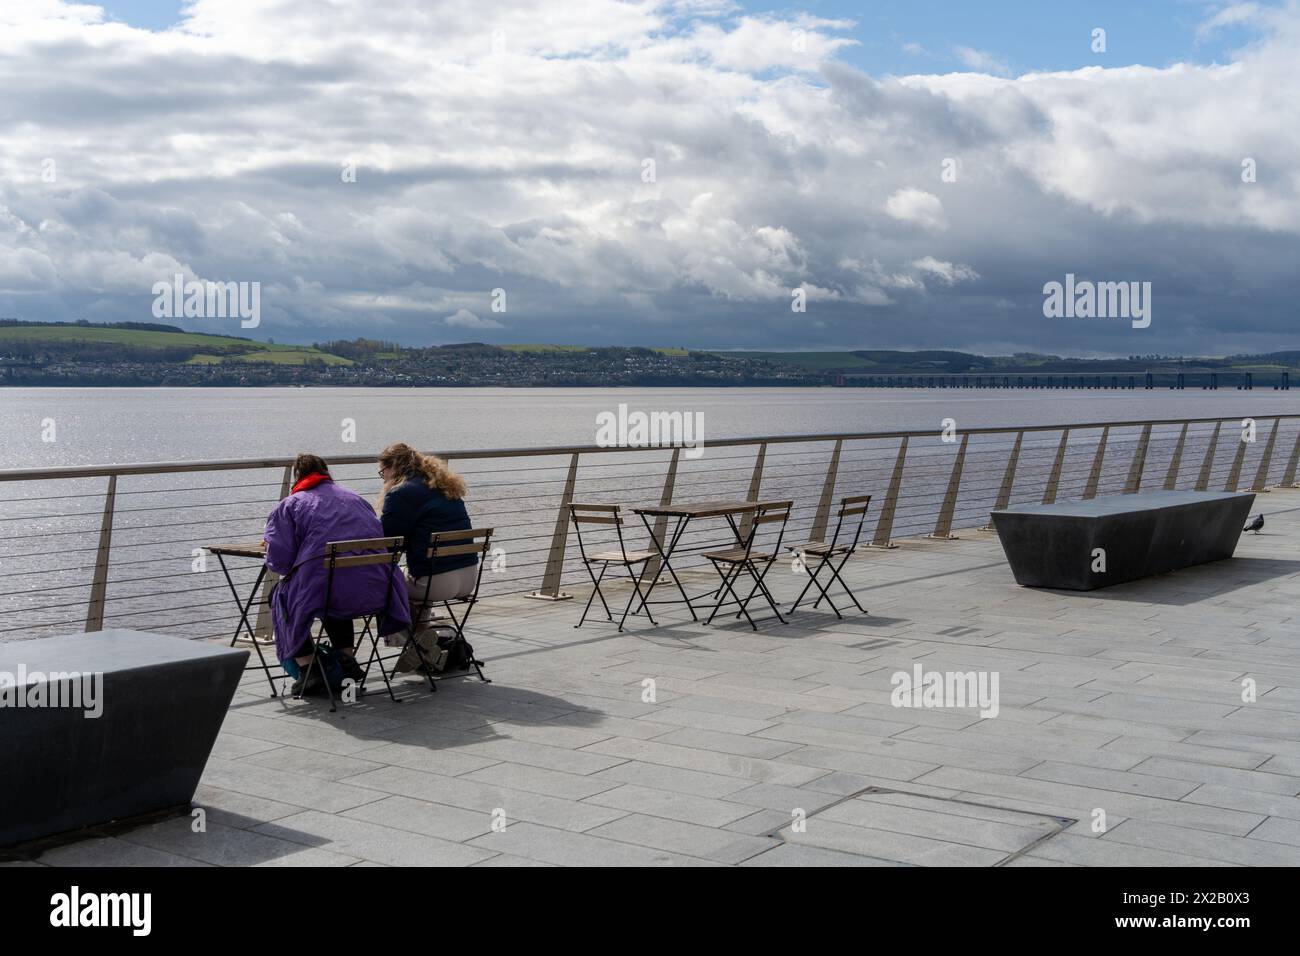 Deux personnes s'assoient à une table extérieure surplombant l'estuaire de la rivière Tay à Dundee, en Écosse, au Royaume-Uni. Concept de style de vie urbain moderne, vie urbaine Banque D'Images